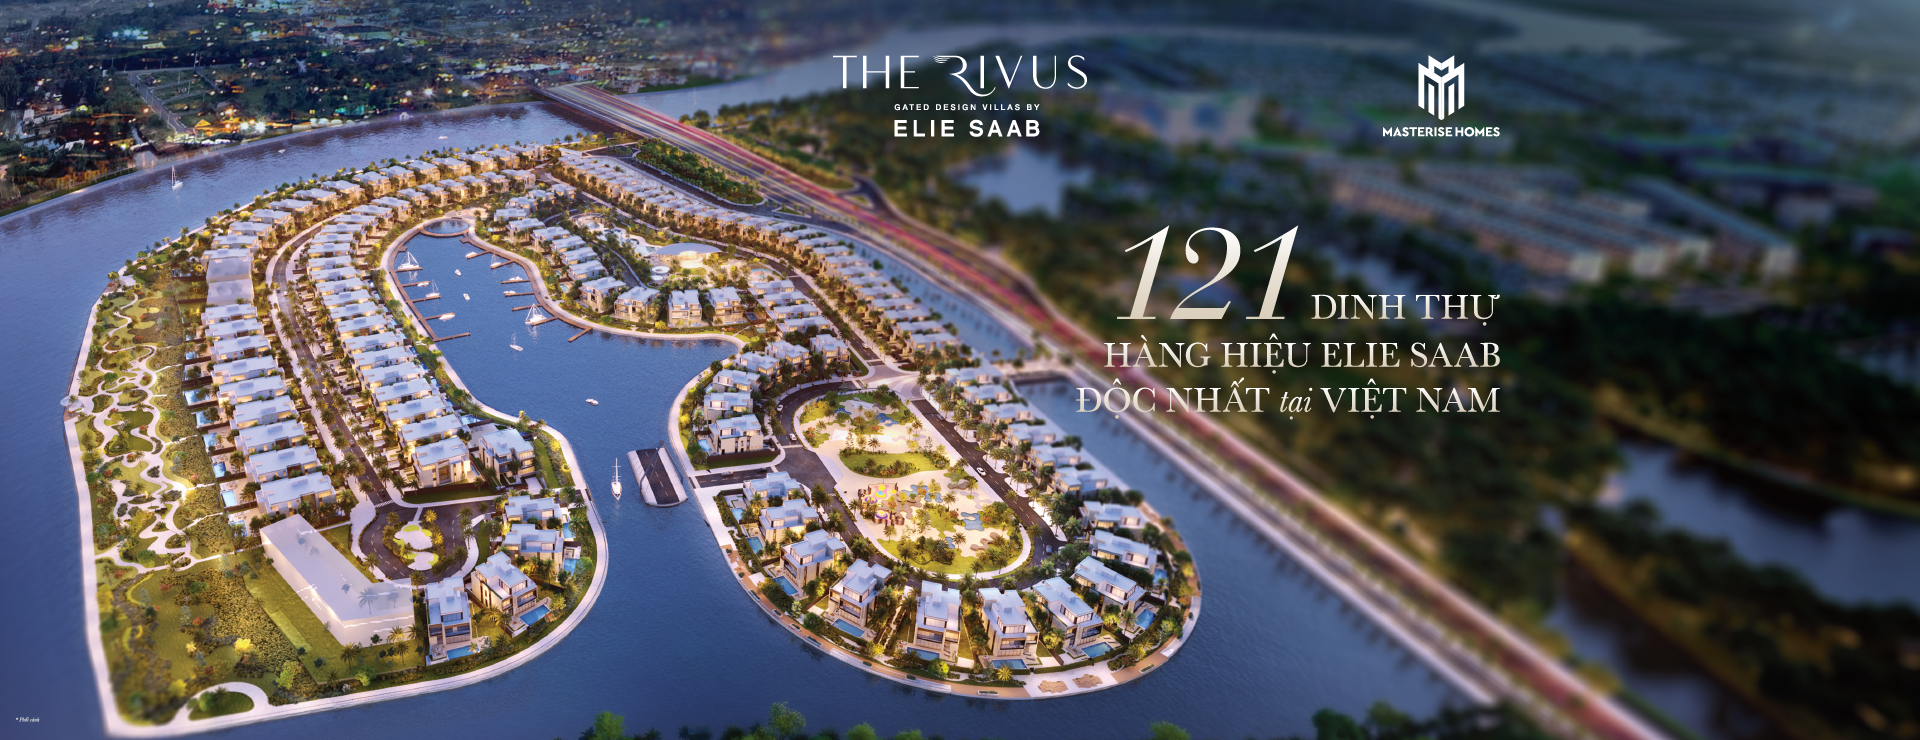 dinh thự The Rivus được thiết kế bởi nhà thiết kế nổi tiếng Elie Saab